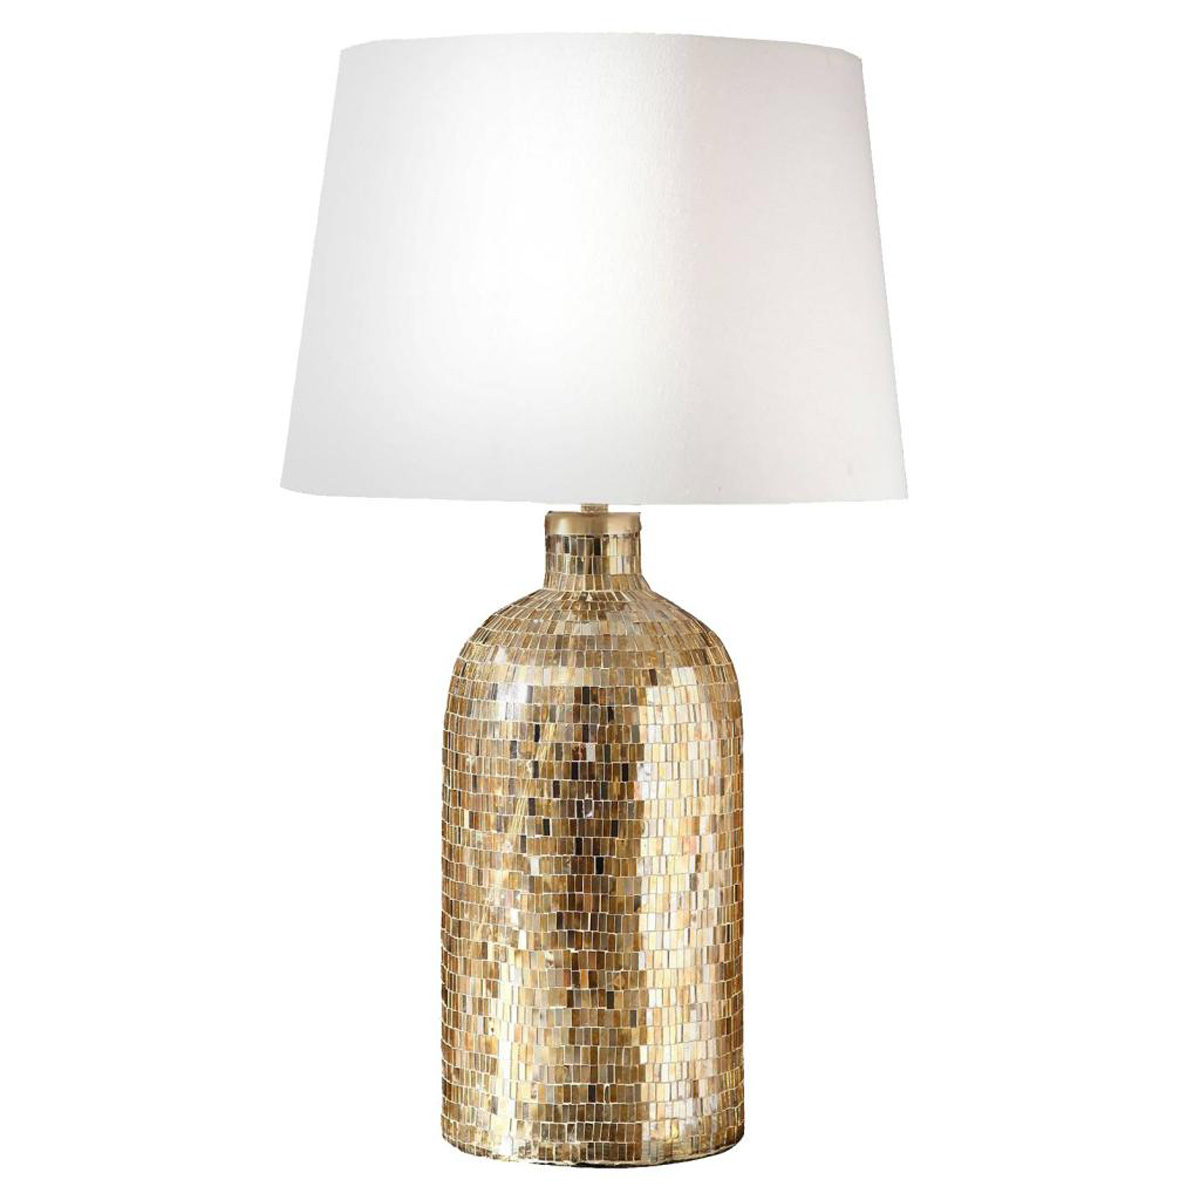 Ren-Wil Rubes Table Lamp - Mosaic